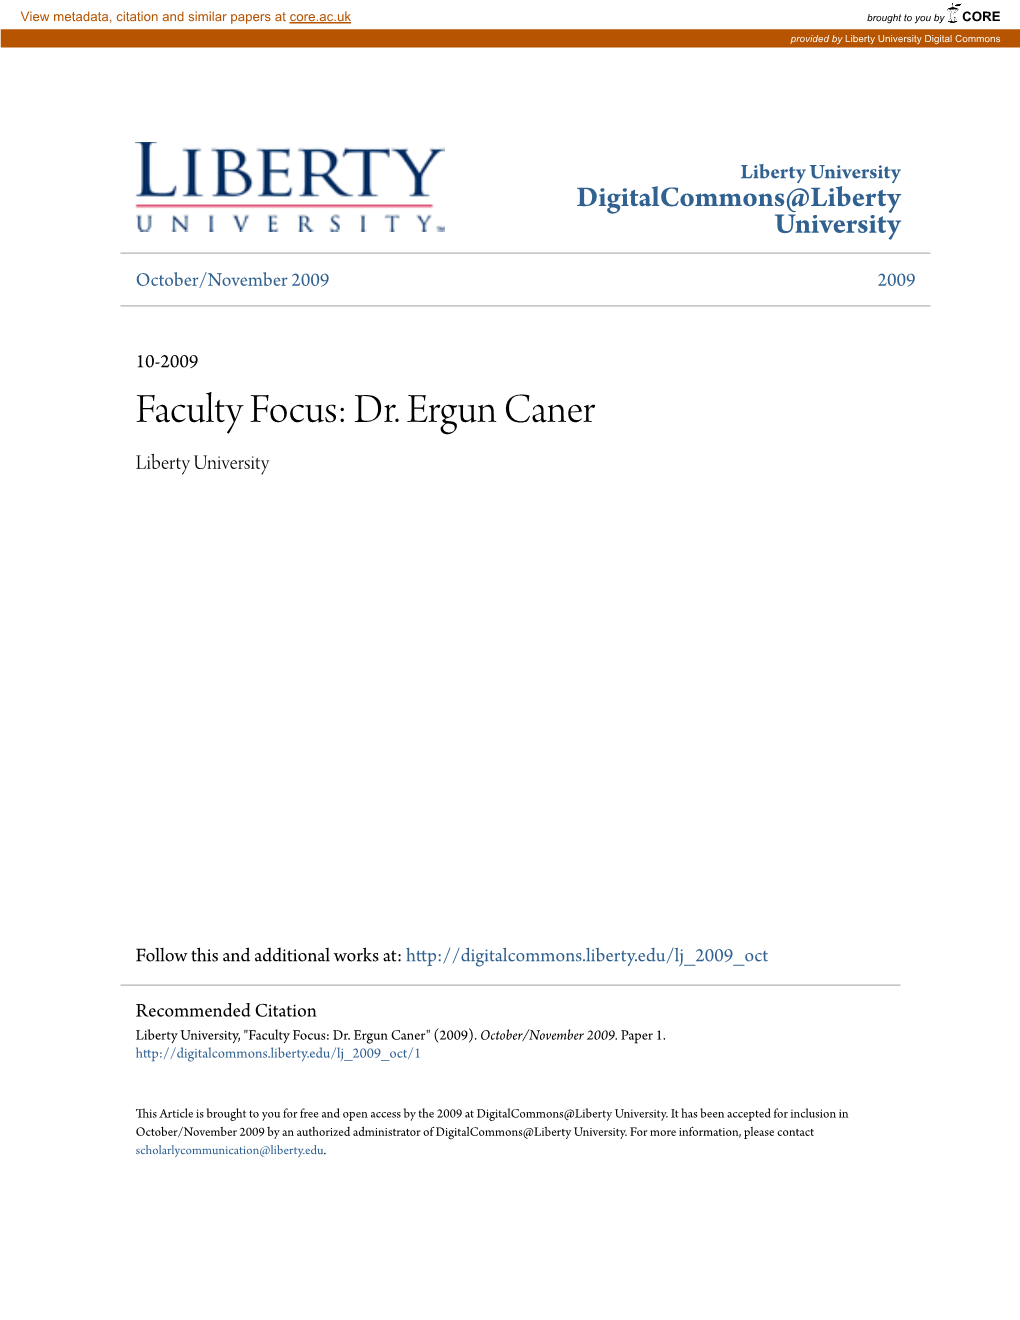 Faculty Focus: Dr. Ergun Caner Liberty University